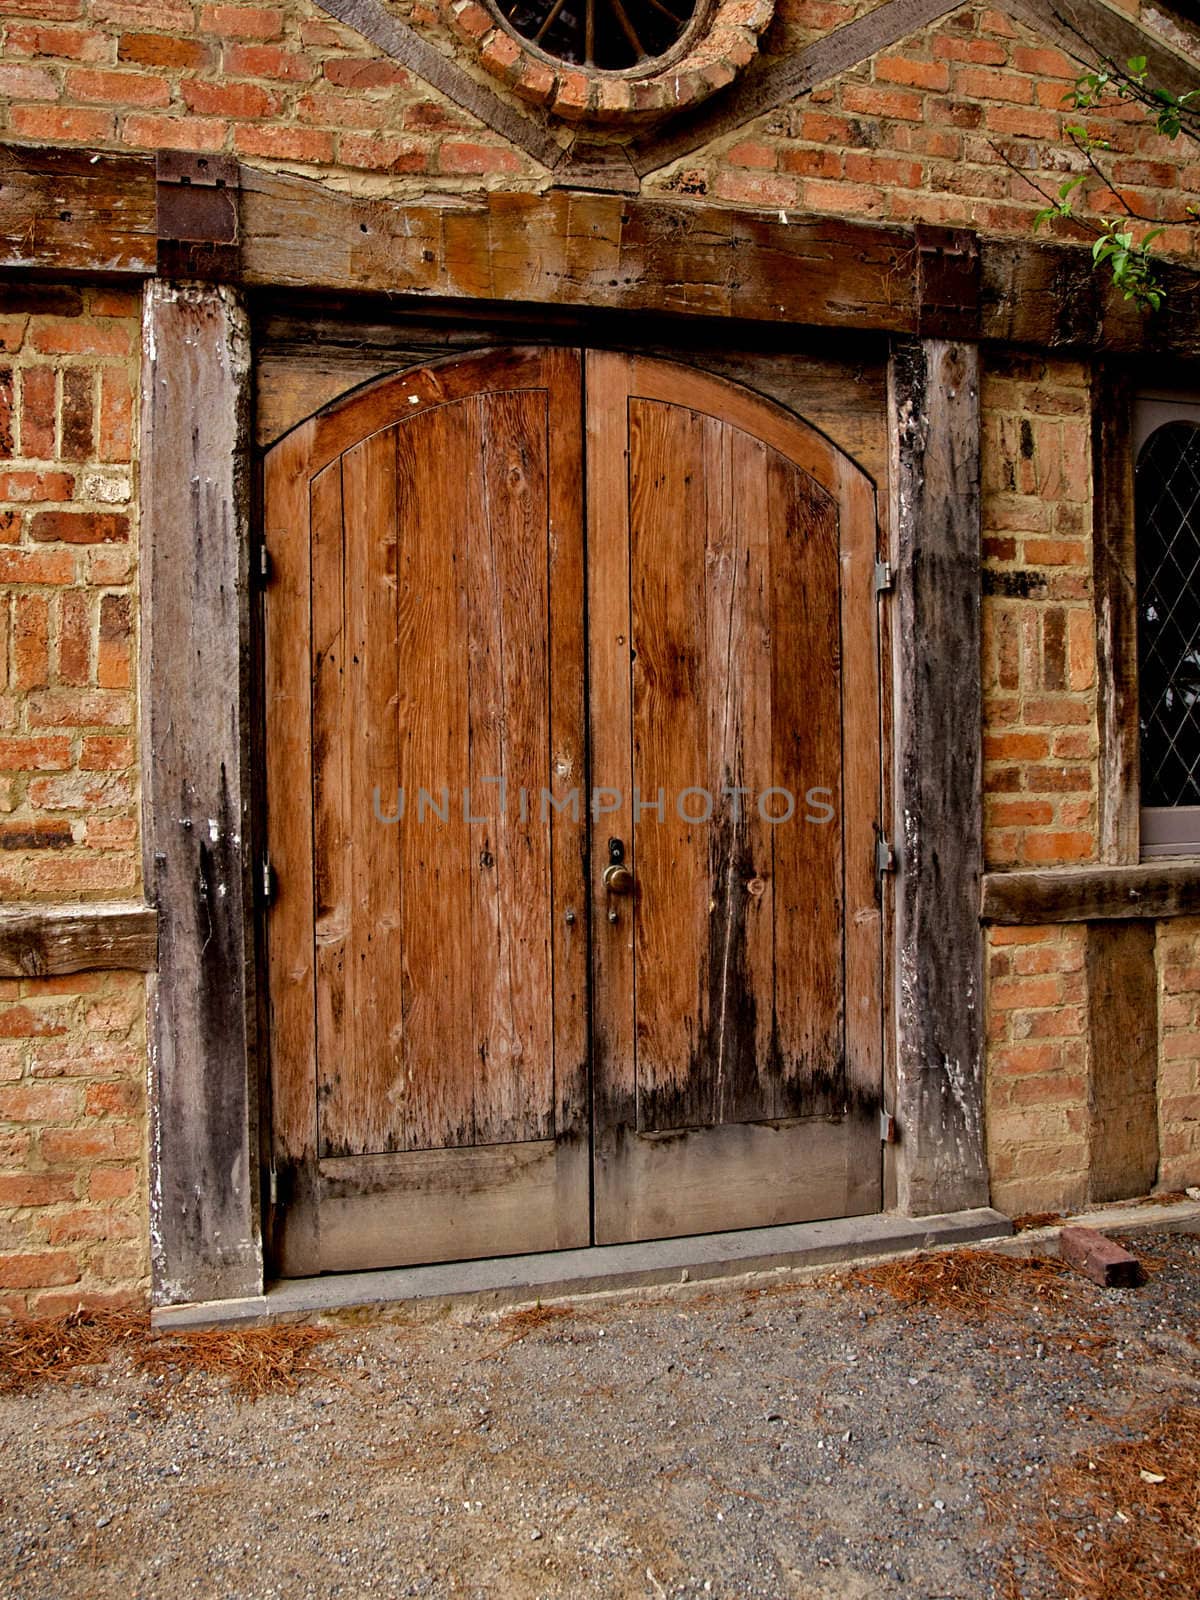 Old wooden historic door, part of a building